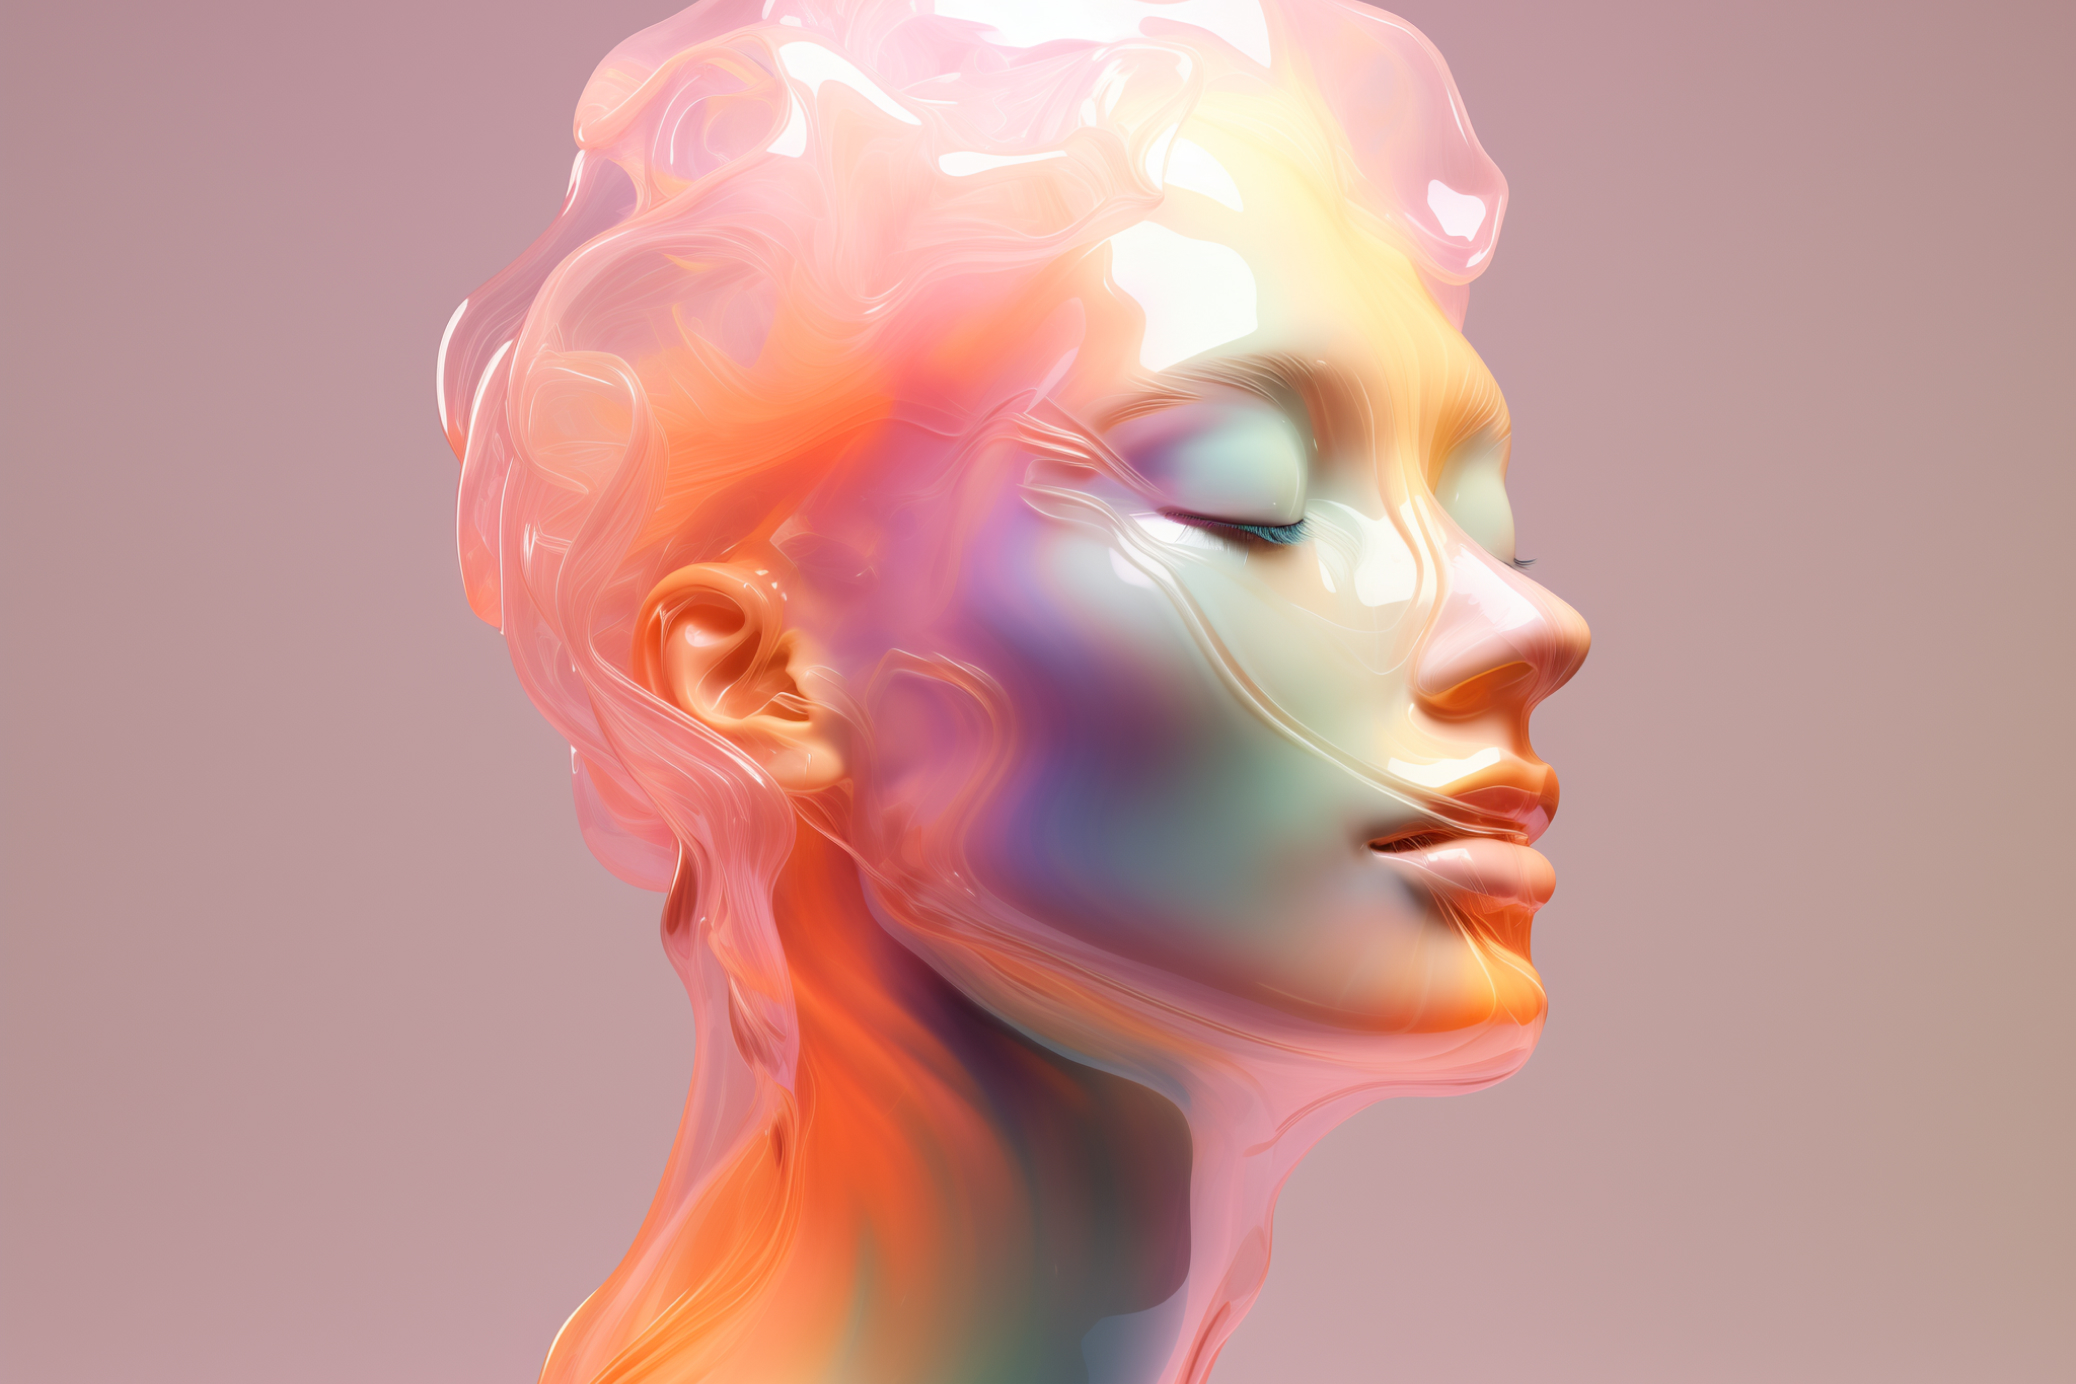 Render 3D generato con AI di una testa umanoide che si dissolve in un velo astratto semitrasparente e lucido dai toni azzuro-rosa